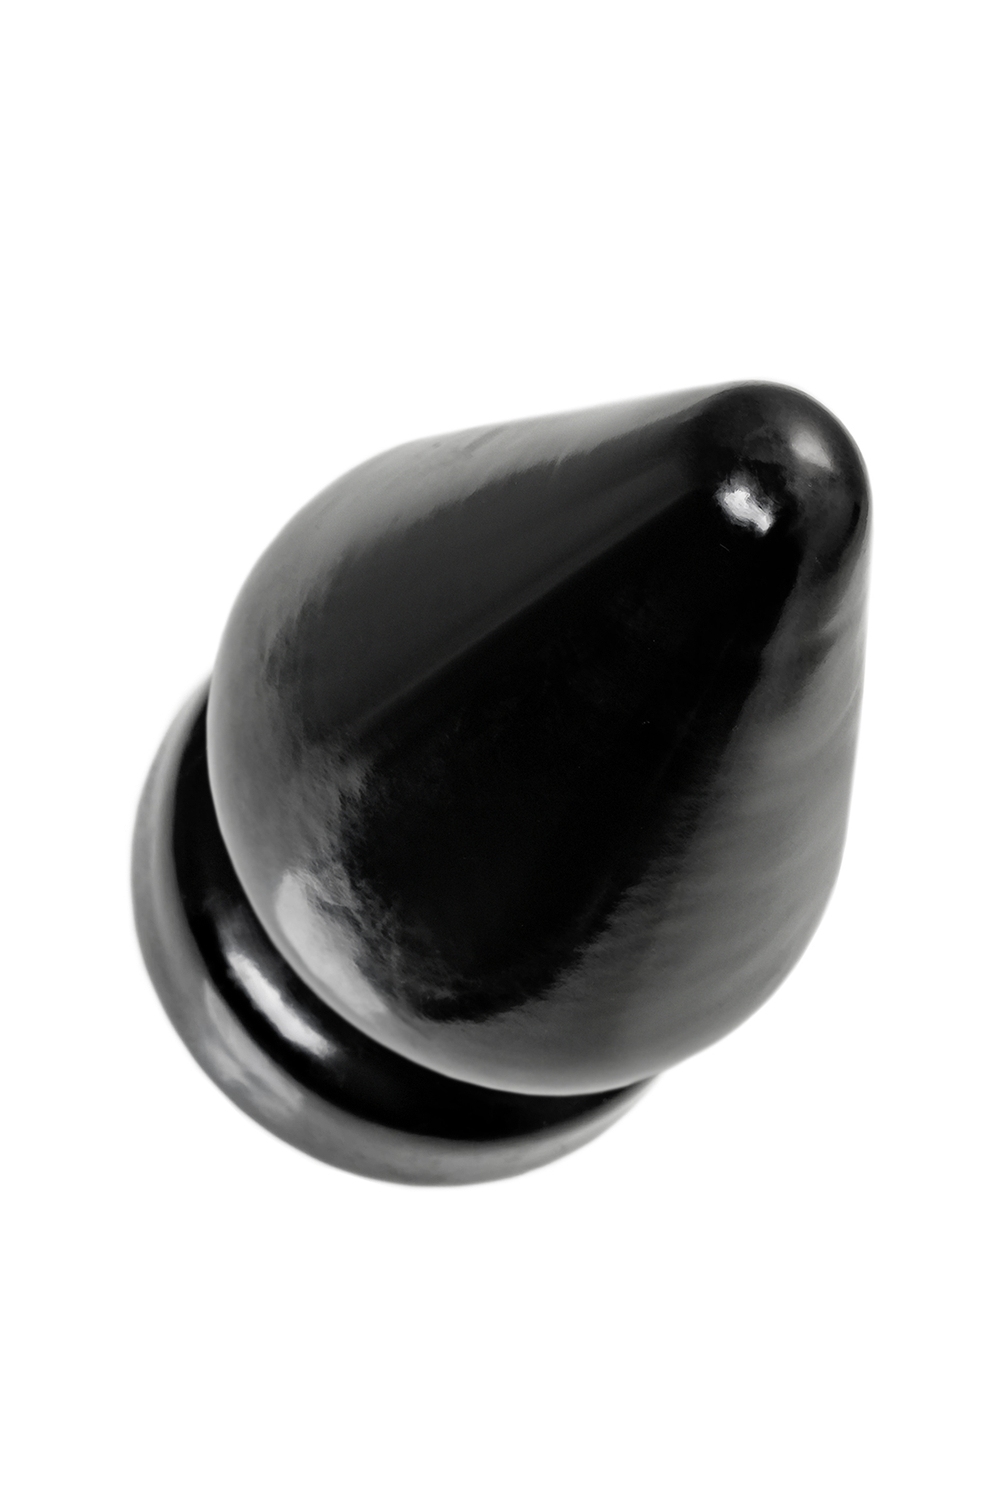 Большая анальная втулка POPO Draco β, черная, 21 см, Ø 11,5 см